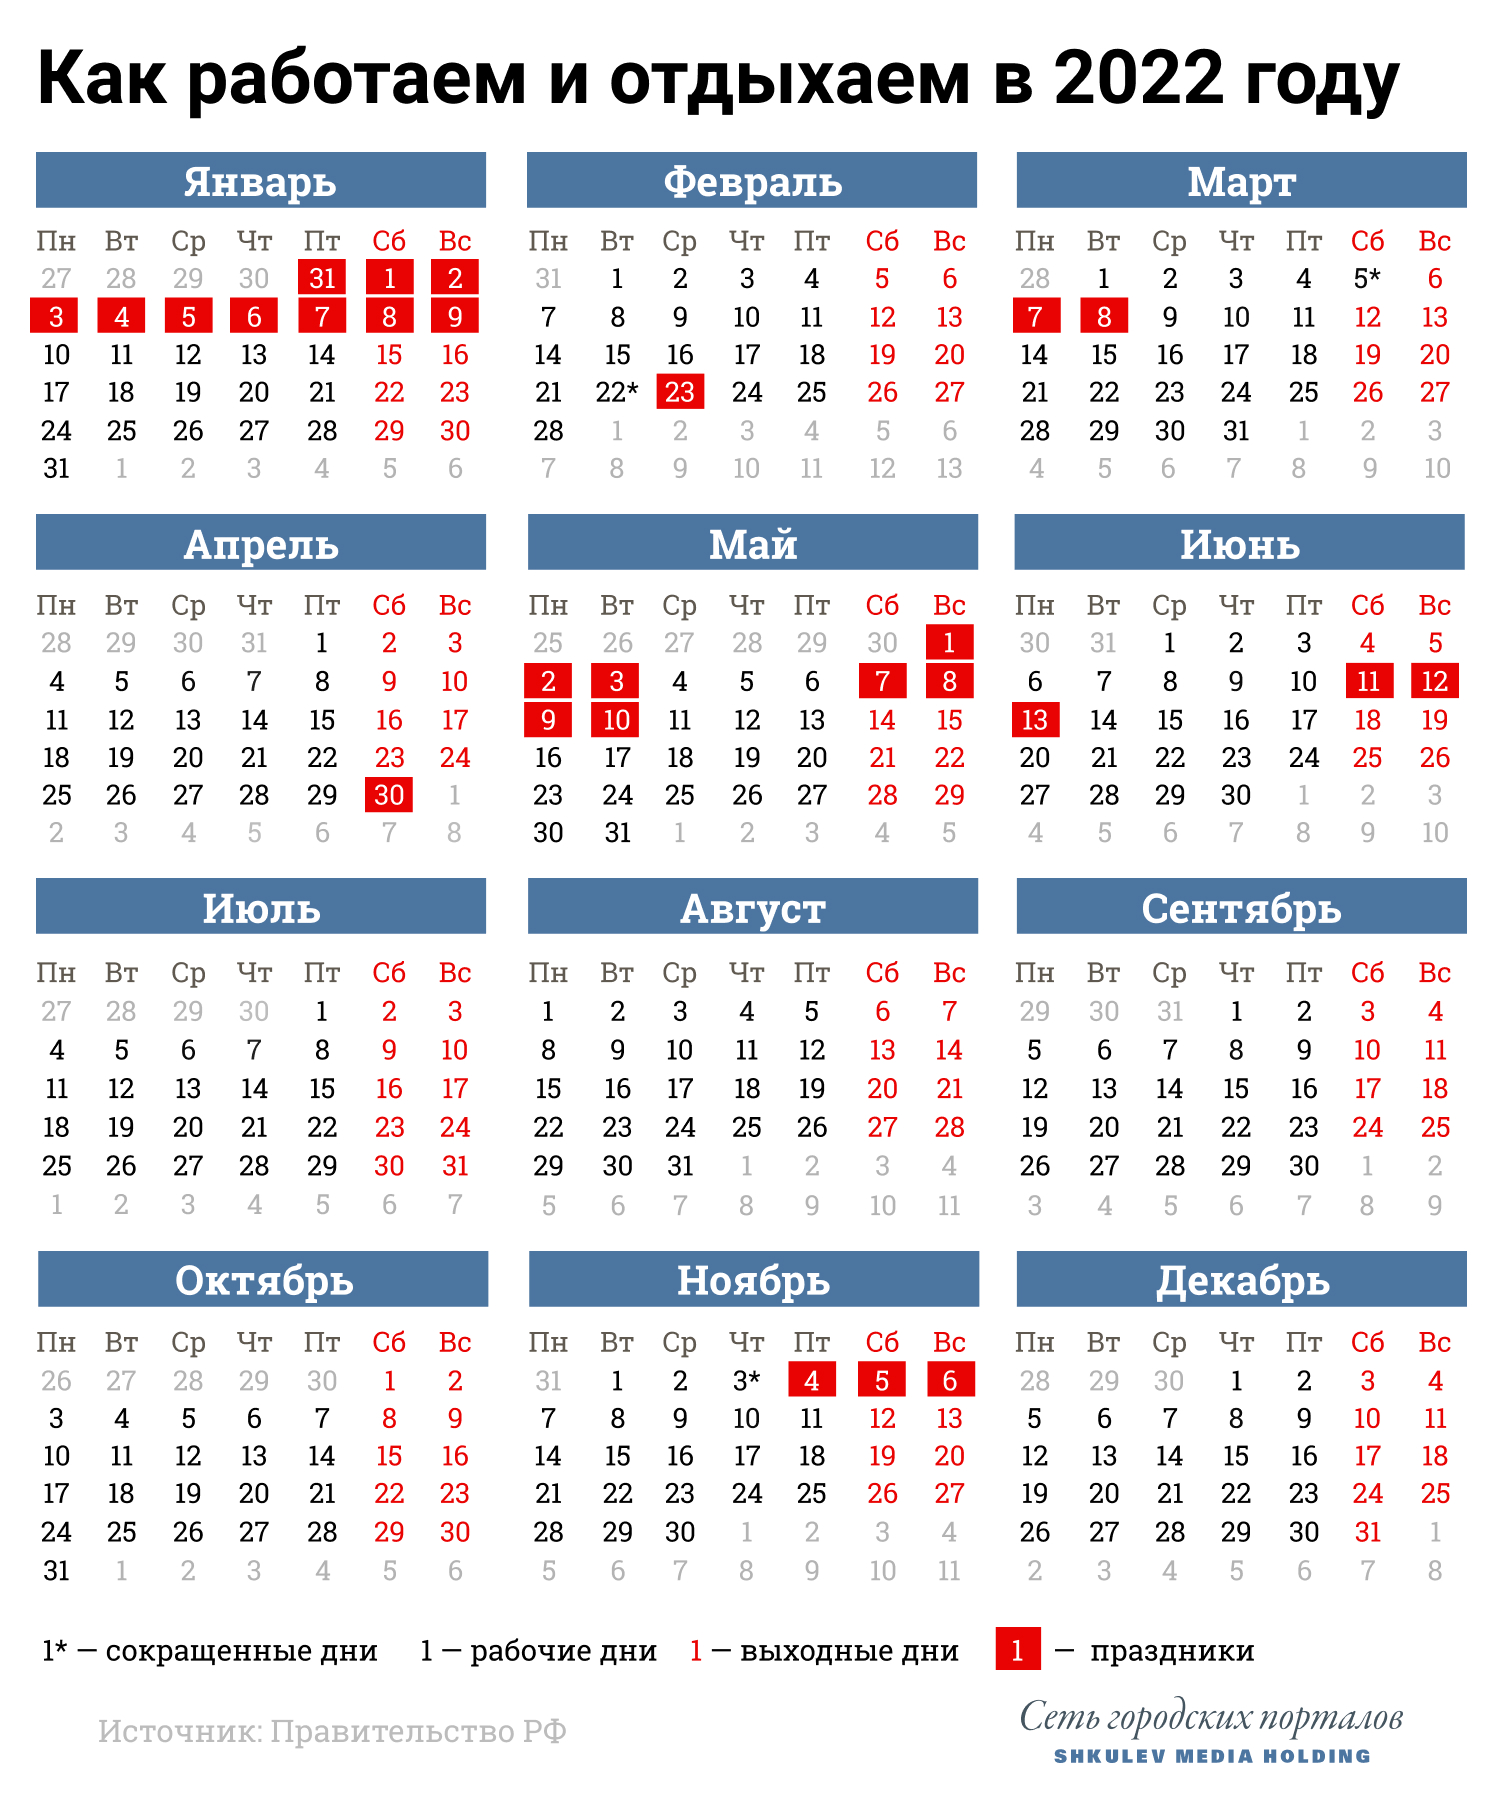 Сохраняйте календарь выходных и праздников в 2022 году